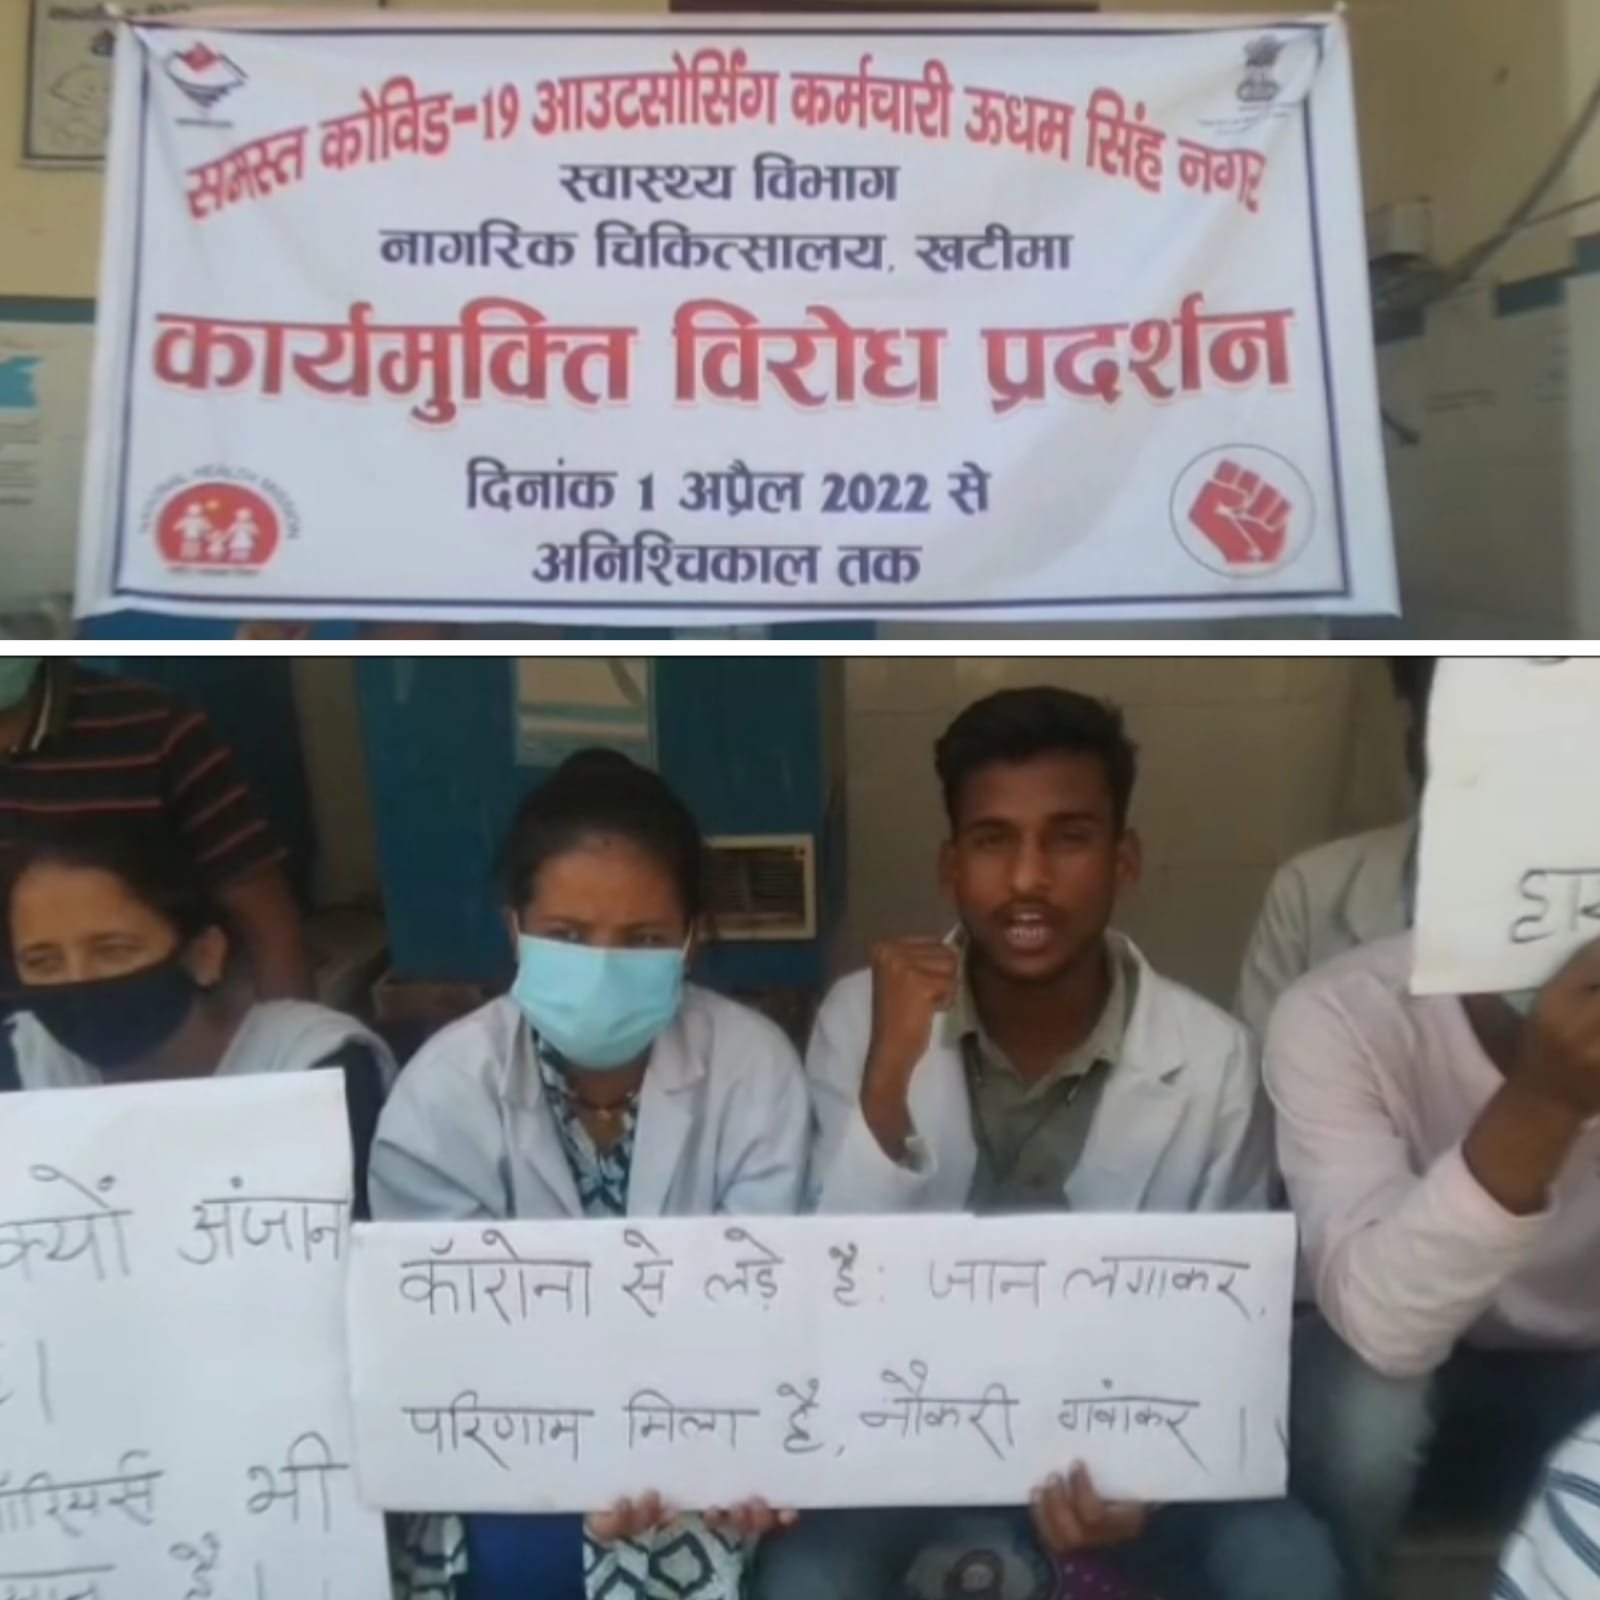 खटीमा: स्वास्थ्य विभाग के आउटसोर्सिंग कर्मचारियों का विरोध प्रदर्शन। सरकार के खिलाफ लगाए नारे।।